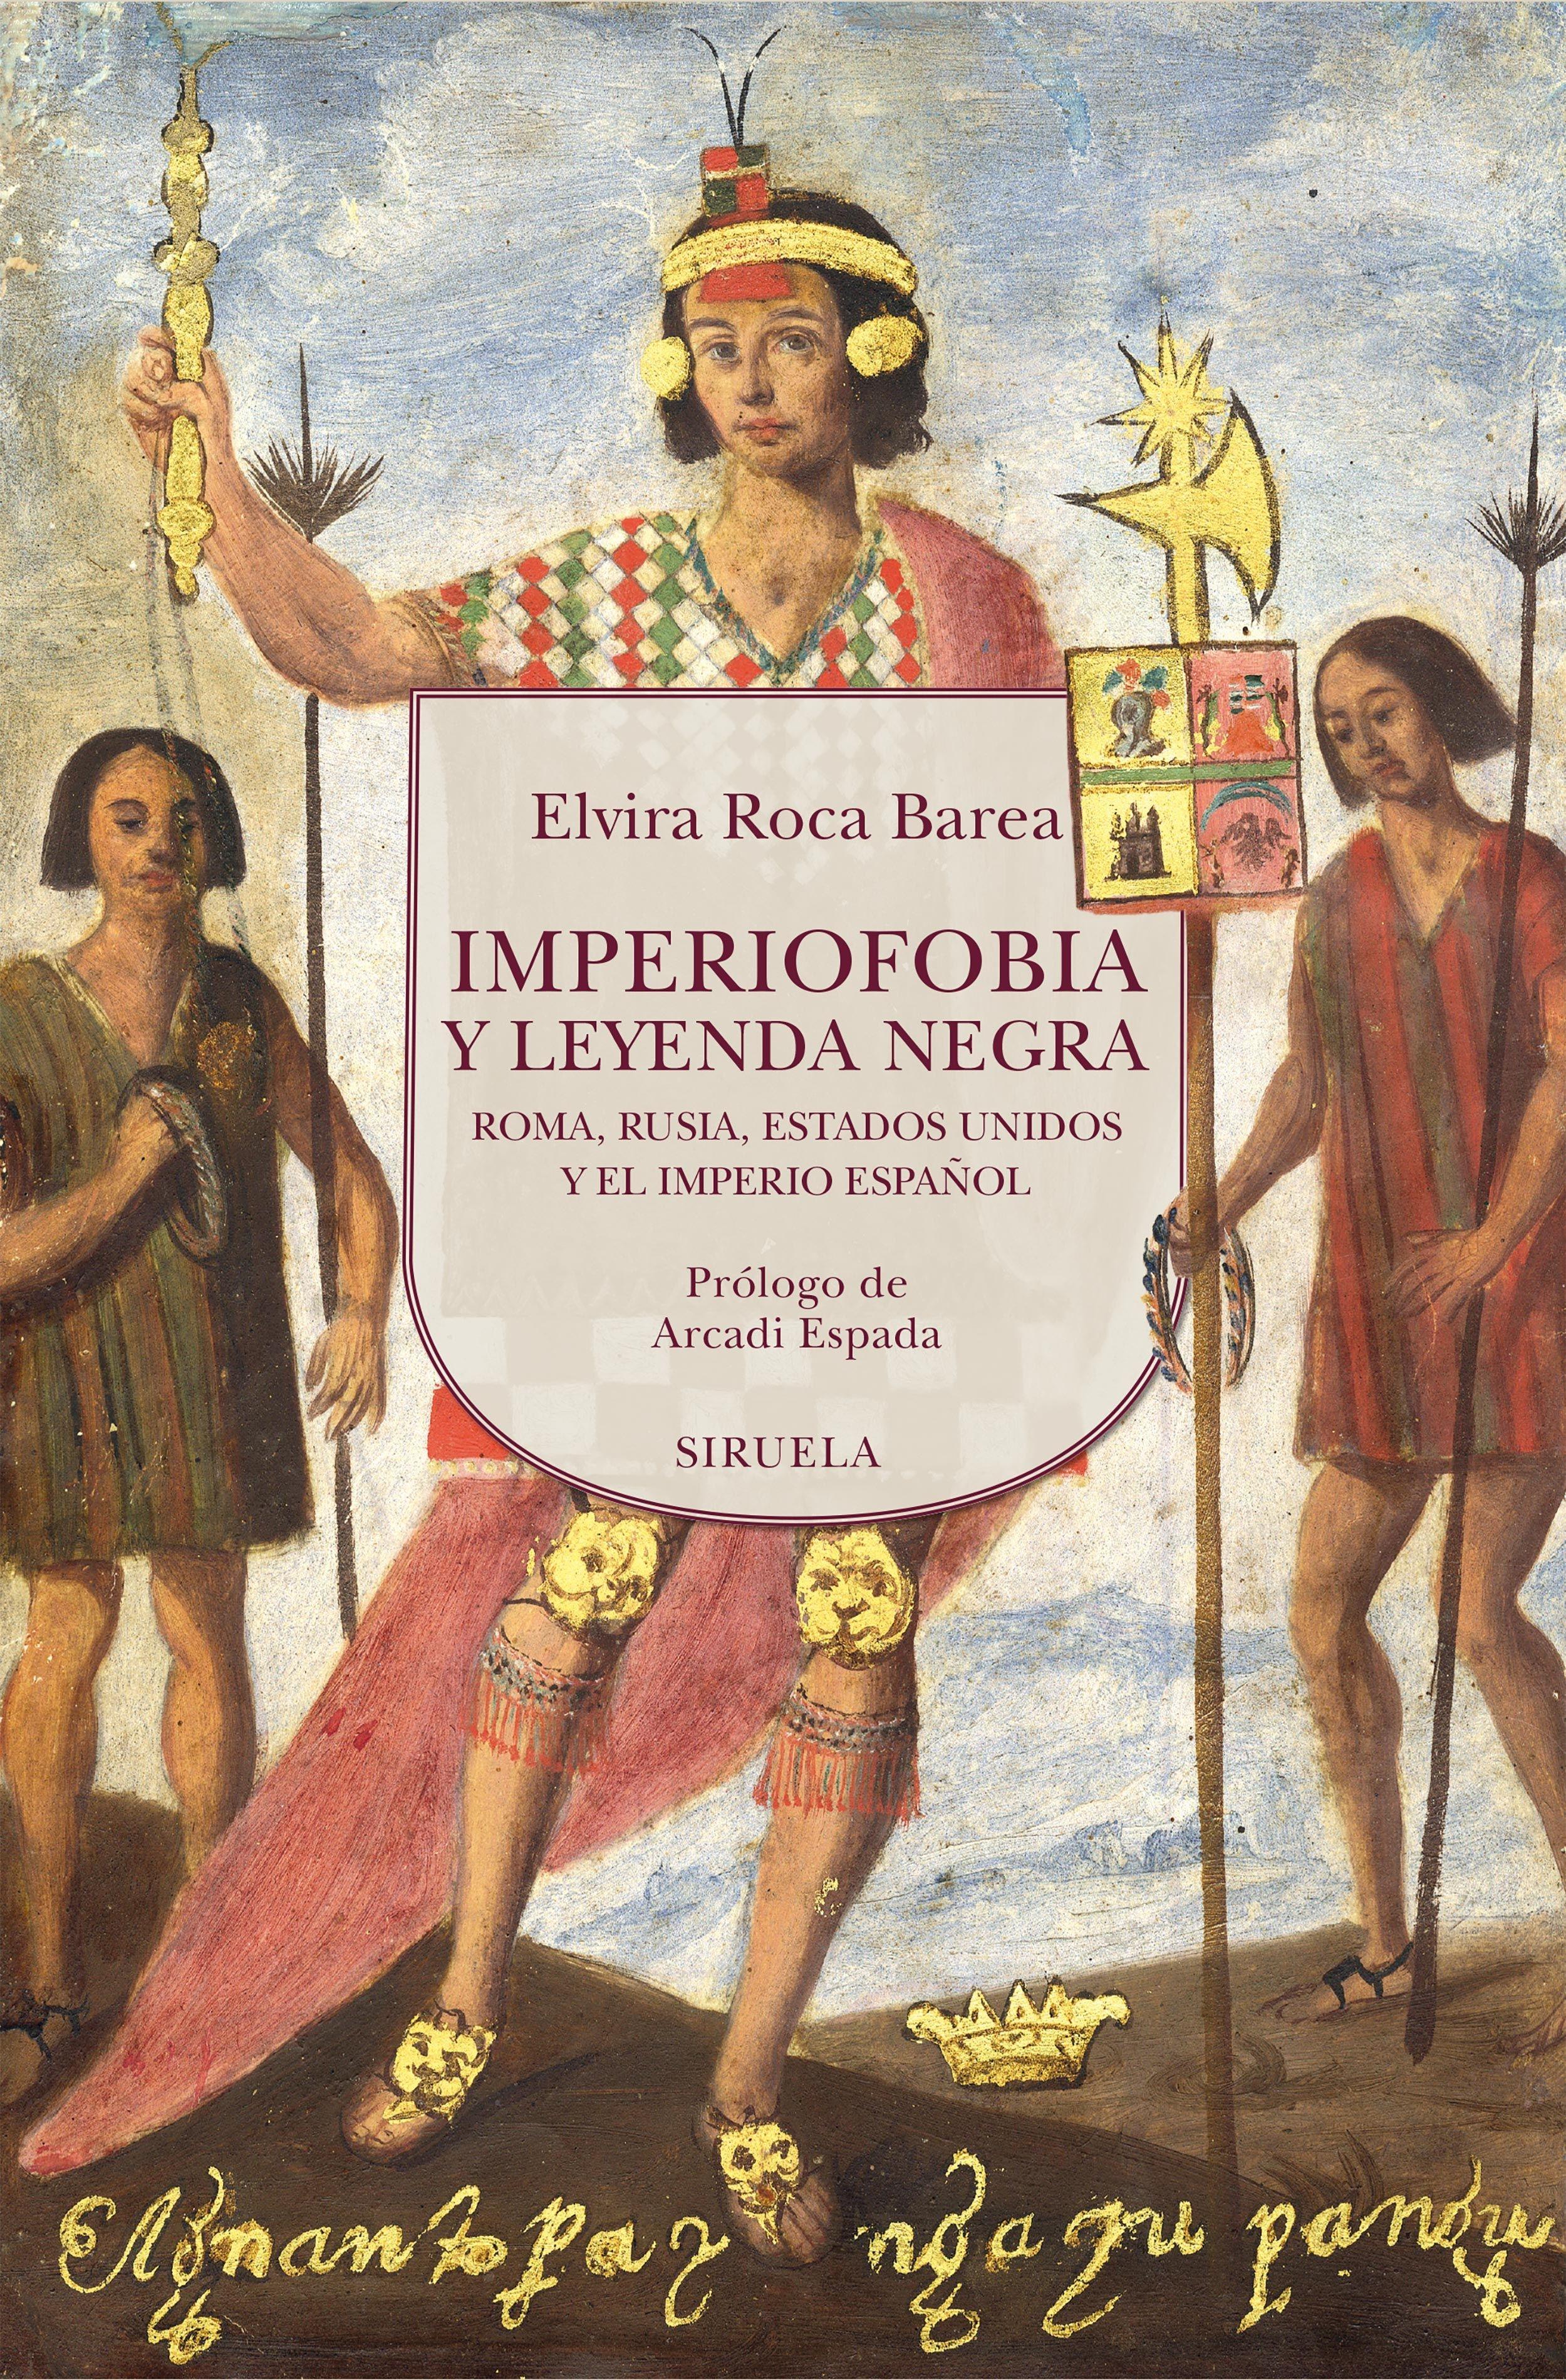 IMPERIOFOBIA  Y LEYENDA NEGRA "ROMA,RUSIA,ESTADOS UNIDOS Y EL IMPERIO ESPAÑOL"